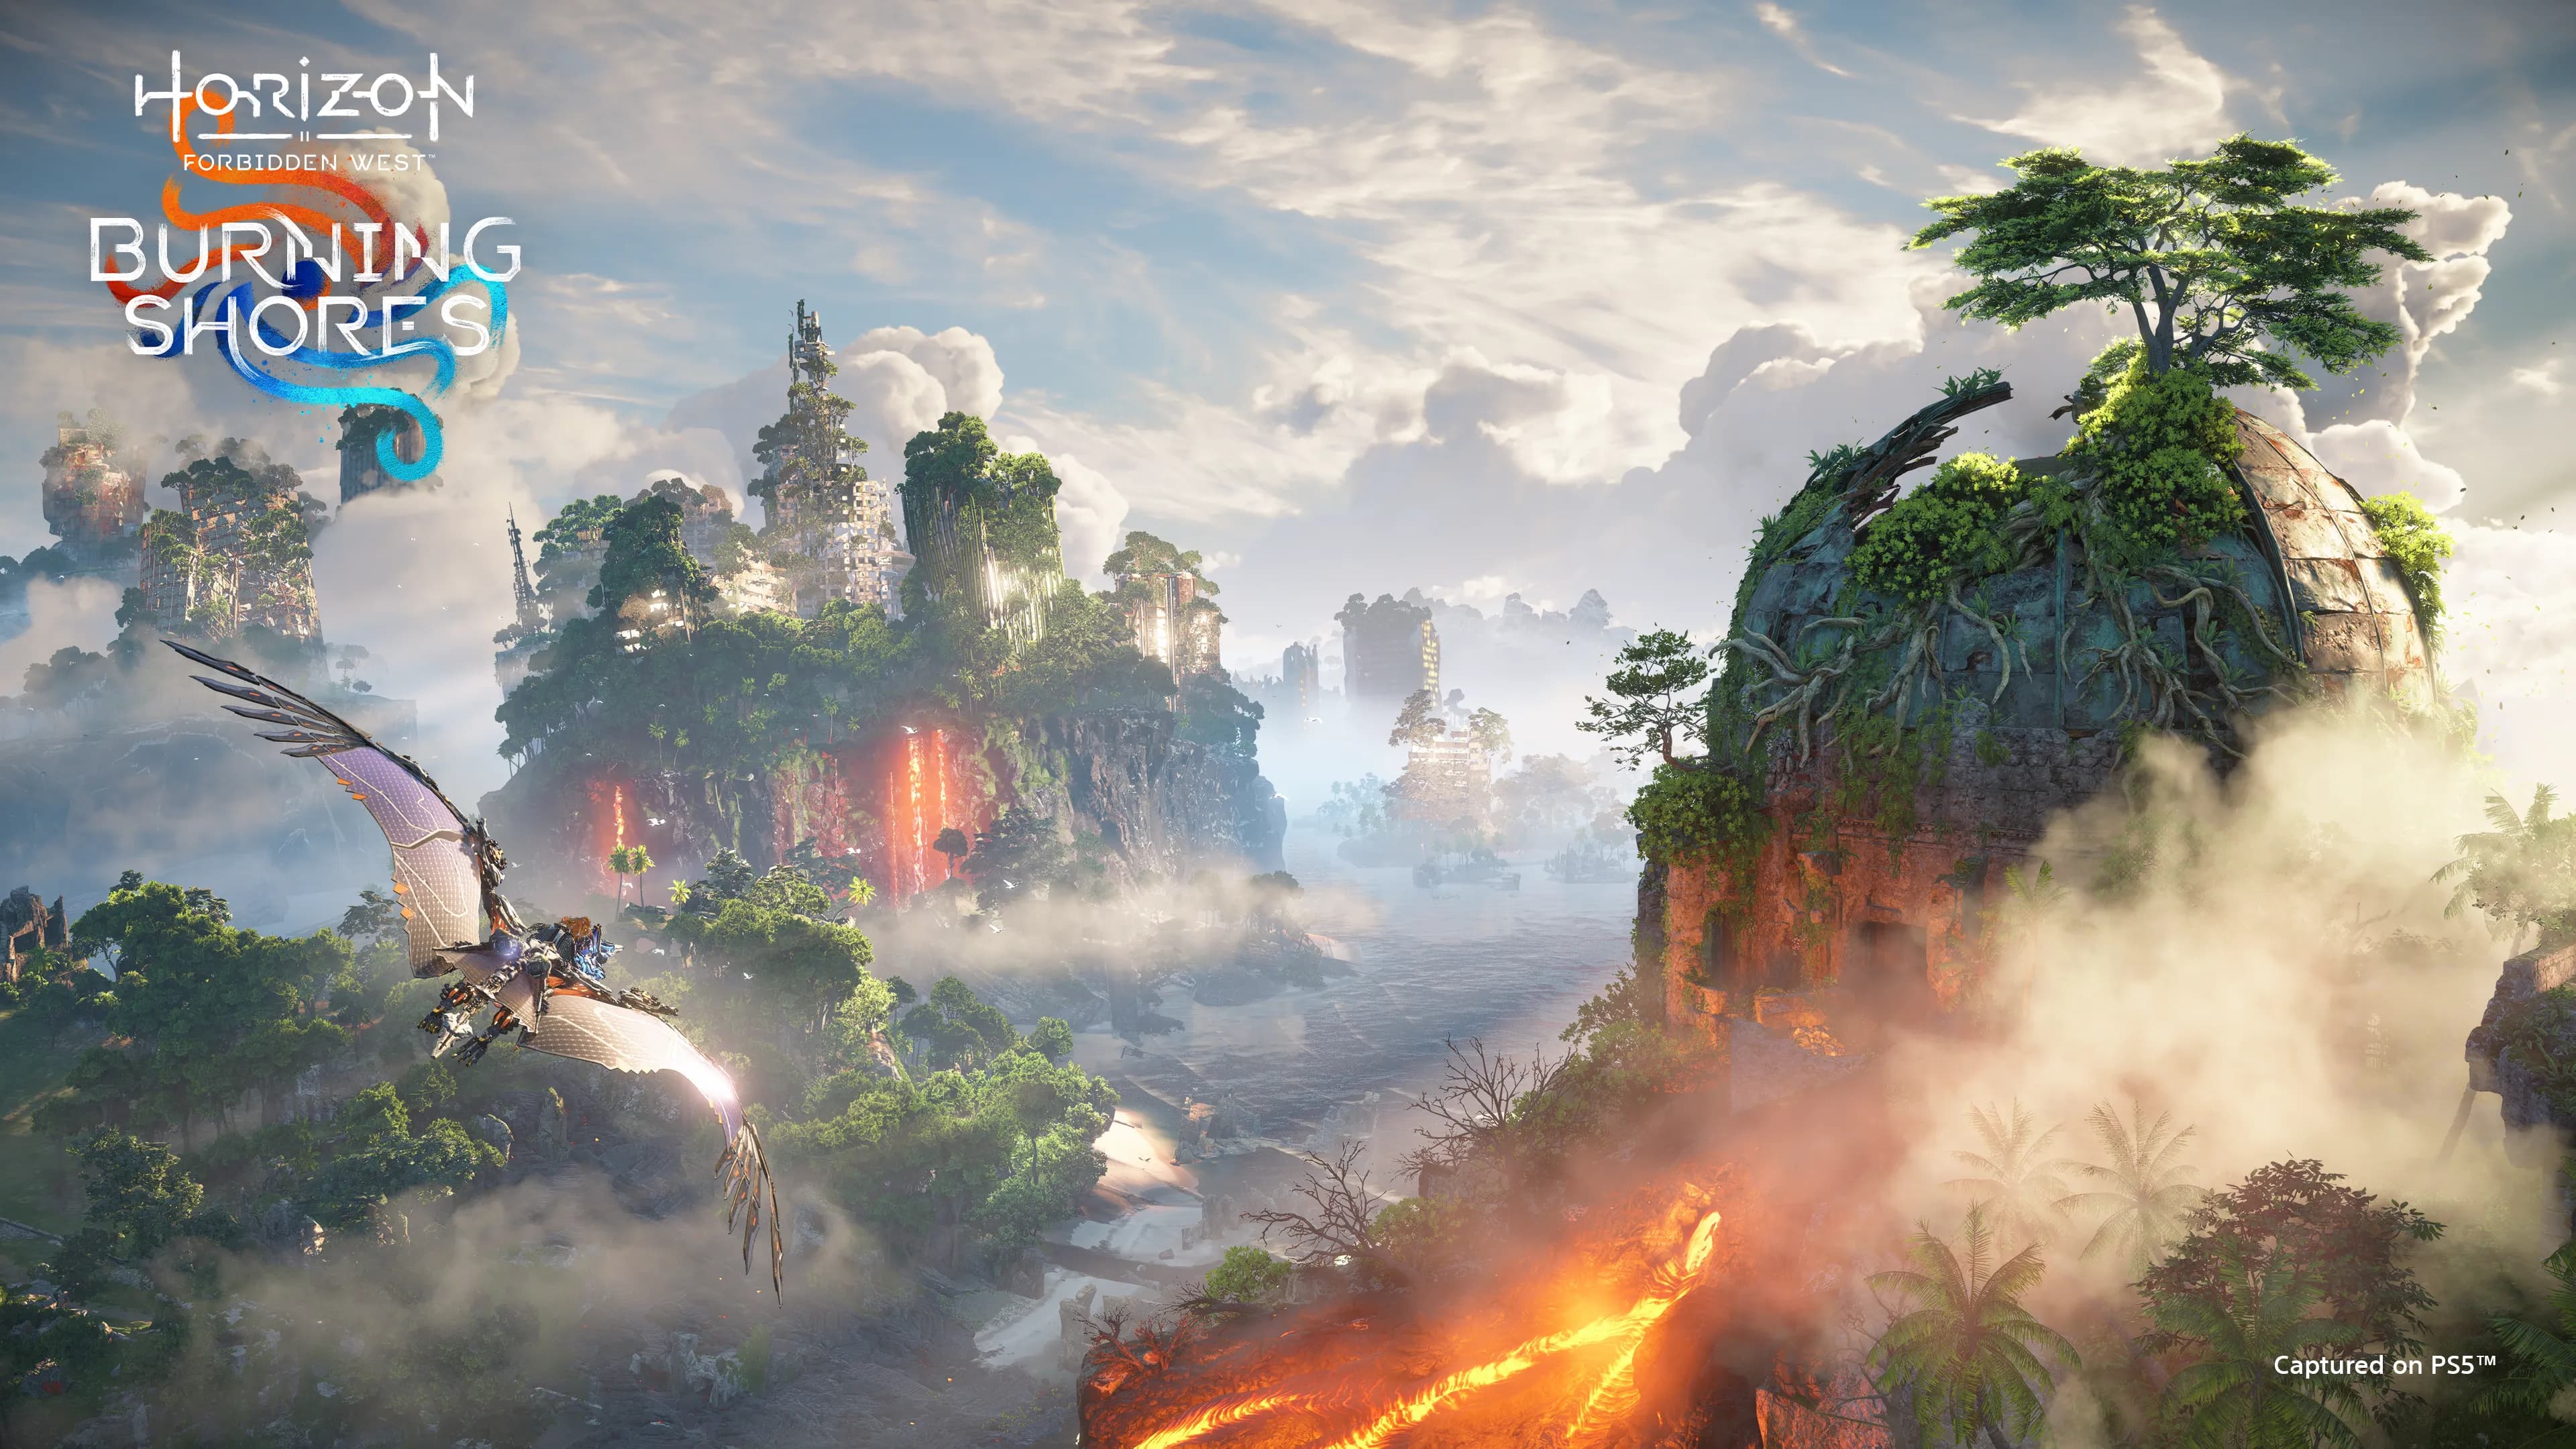 Metacritic responds to Horizon Forbidden West: Burning Shores